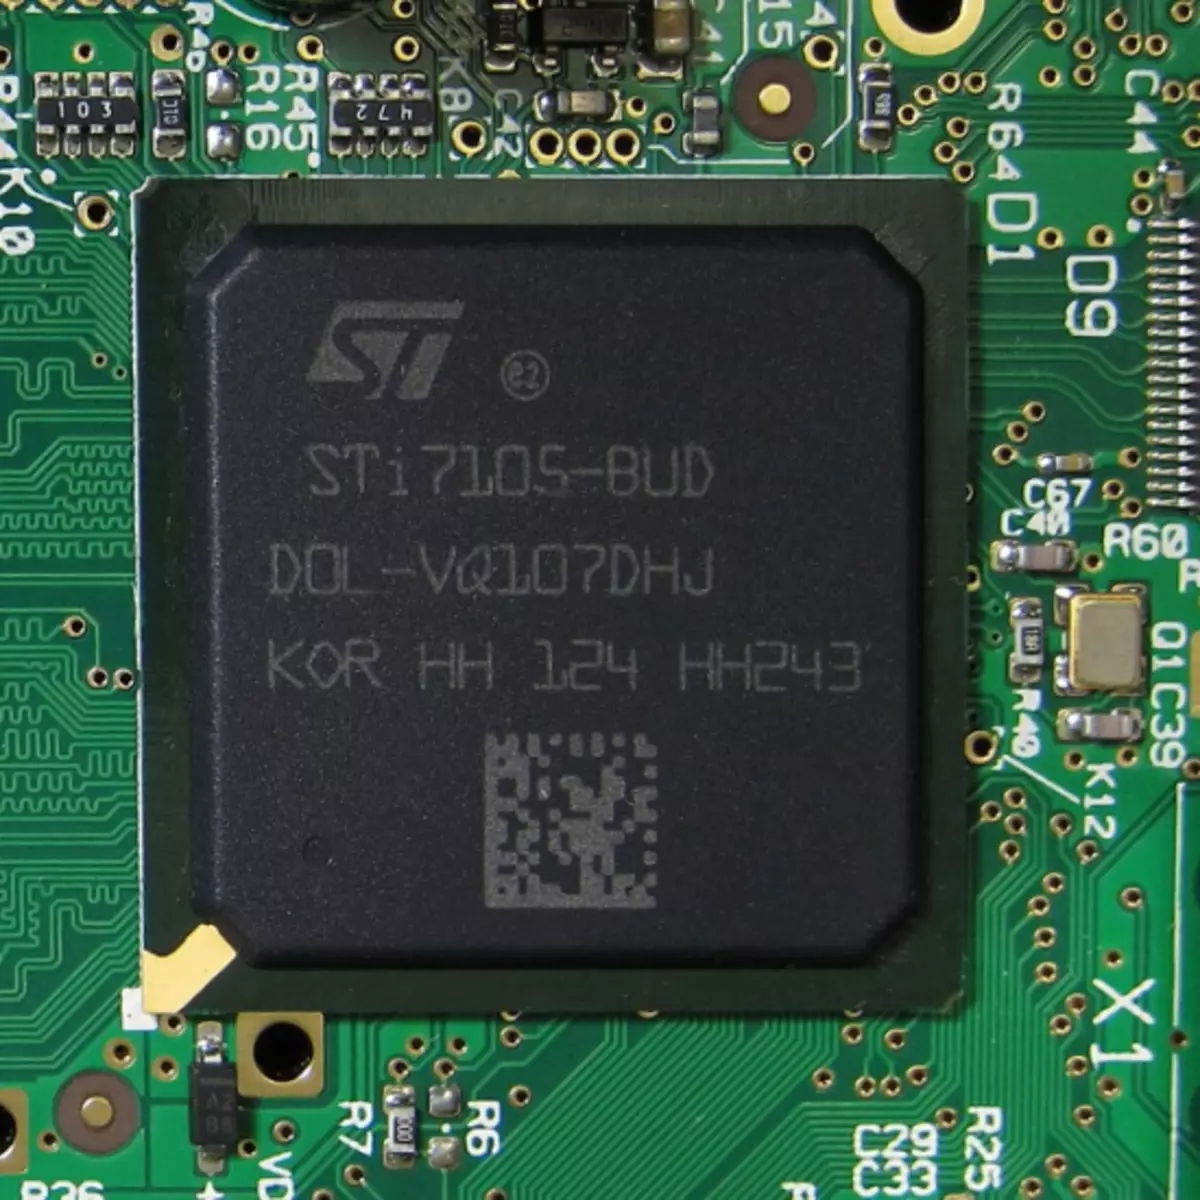 MAG 250 STI7105-BUD پردازنده